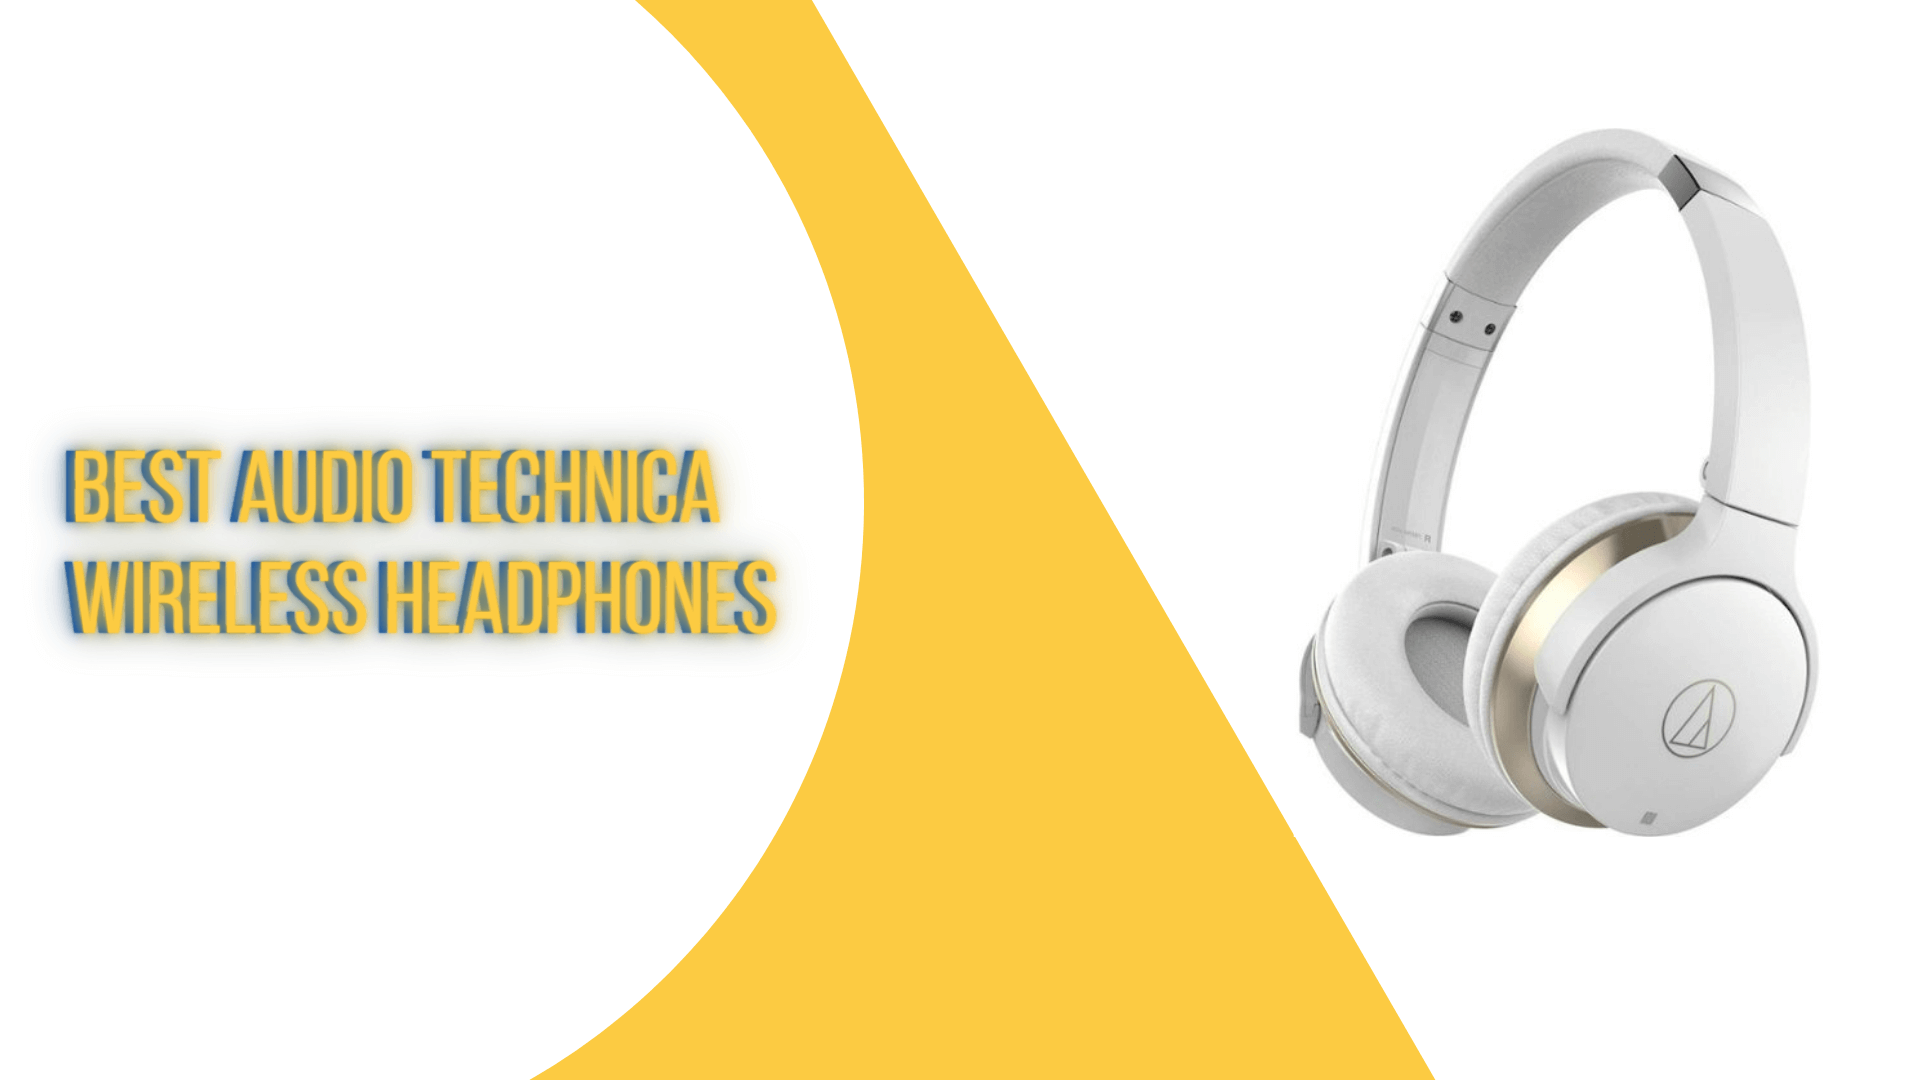 Best Audio Technica Wireless Headphones